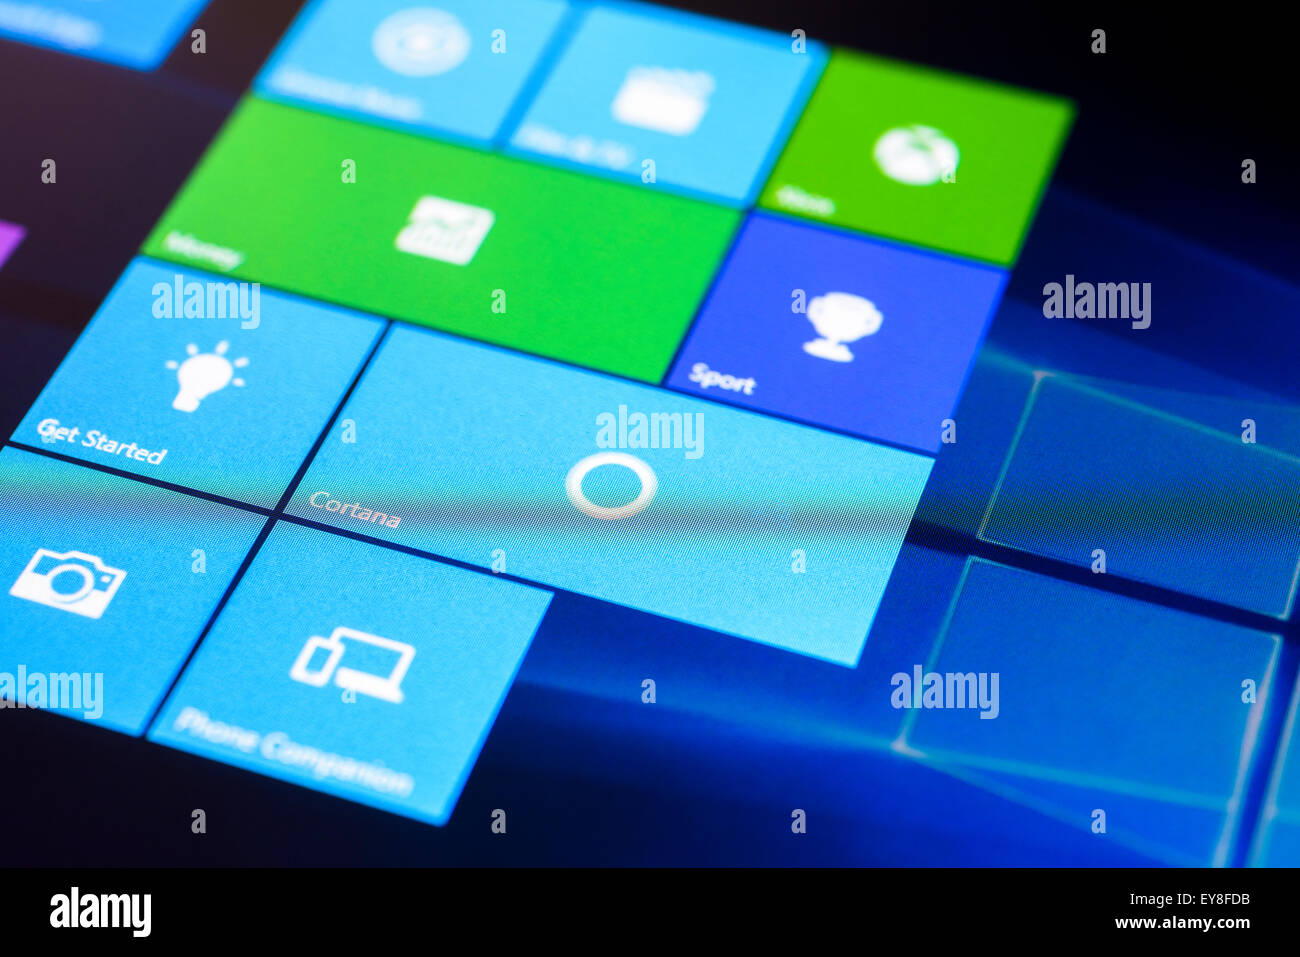 Il menu Start di Microsoft Windows 10 Sistema operativo su un touch screen tablet in modalità tablet. Foto Stock